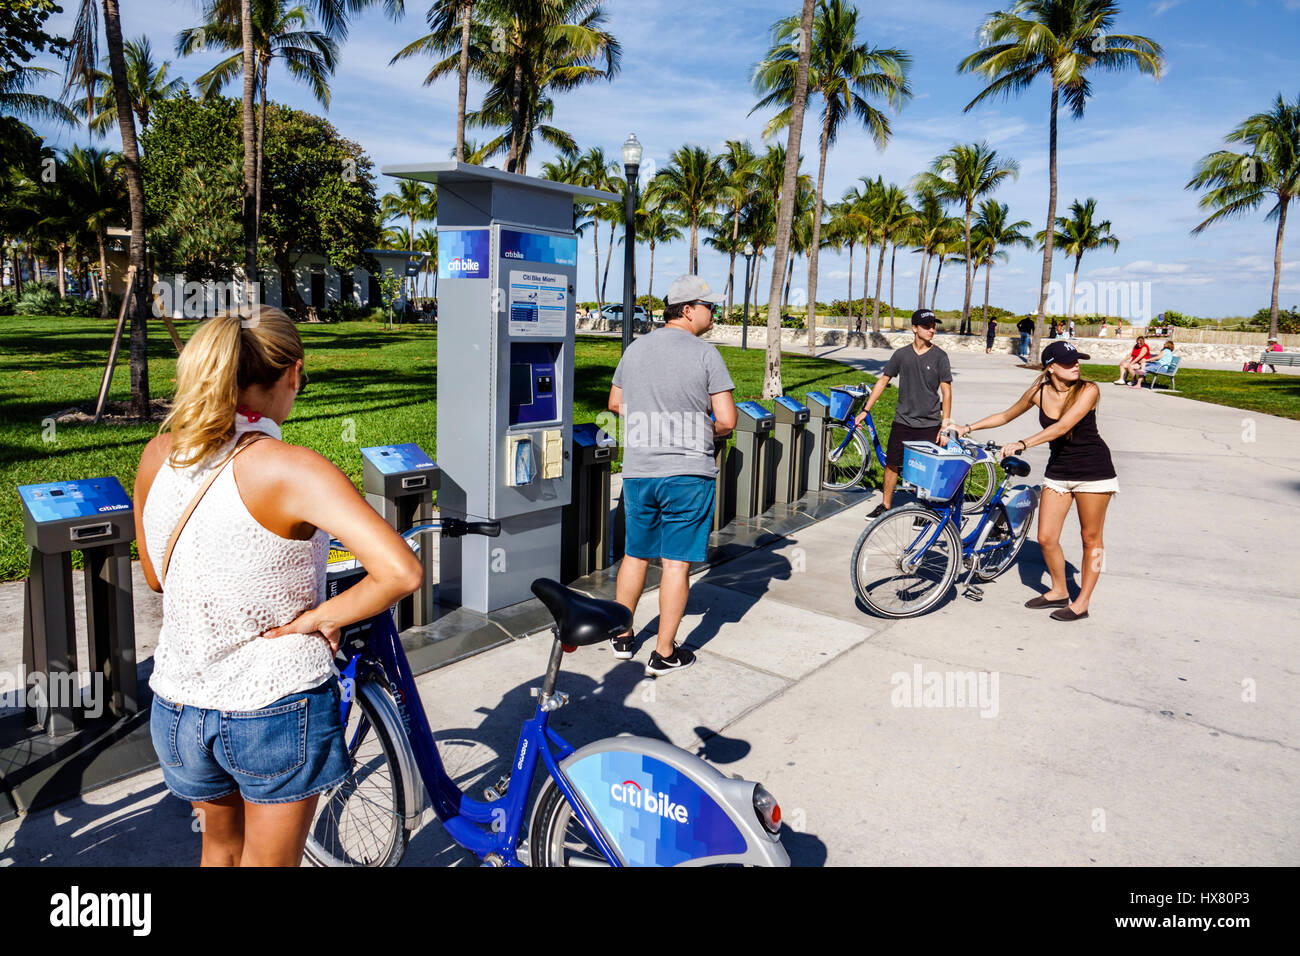 Miami Beach Florida, Lummus Park, Citi Bike, programme de partage de vélo, station, vélo, femme femme femme, homme hommes homme, couple, FL170221004 Banque D'Images